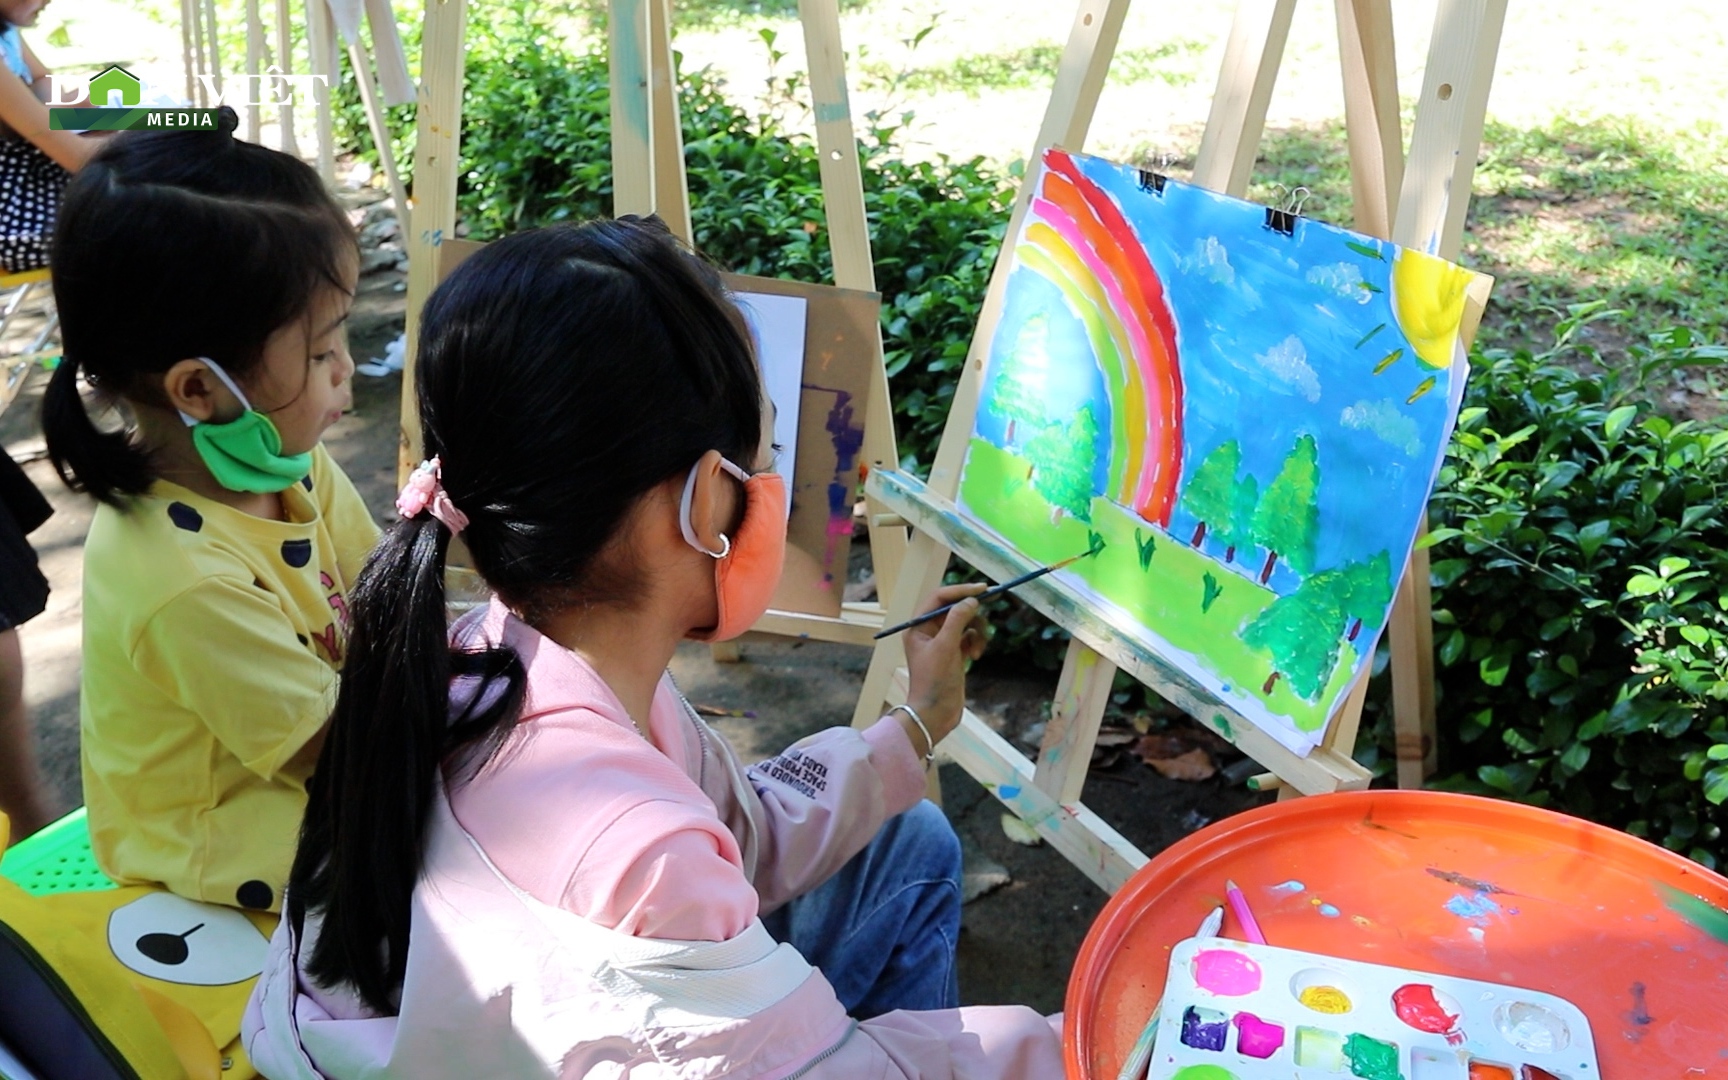 Lớp học vẽ miễn phí trong công viên cho các họa sĩ nhí ở Ninh Thuận